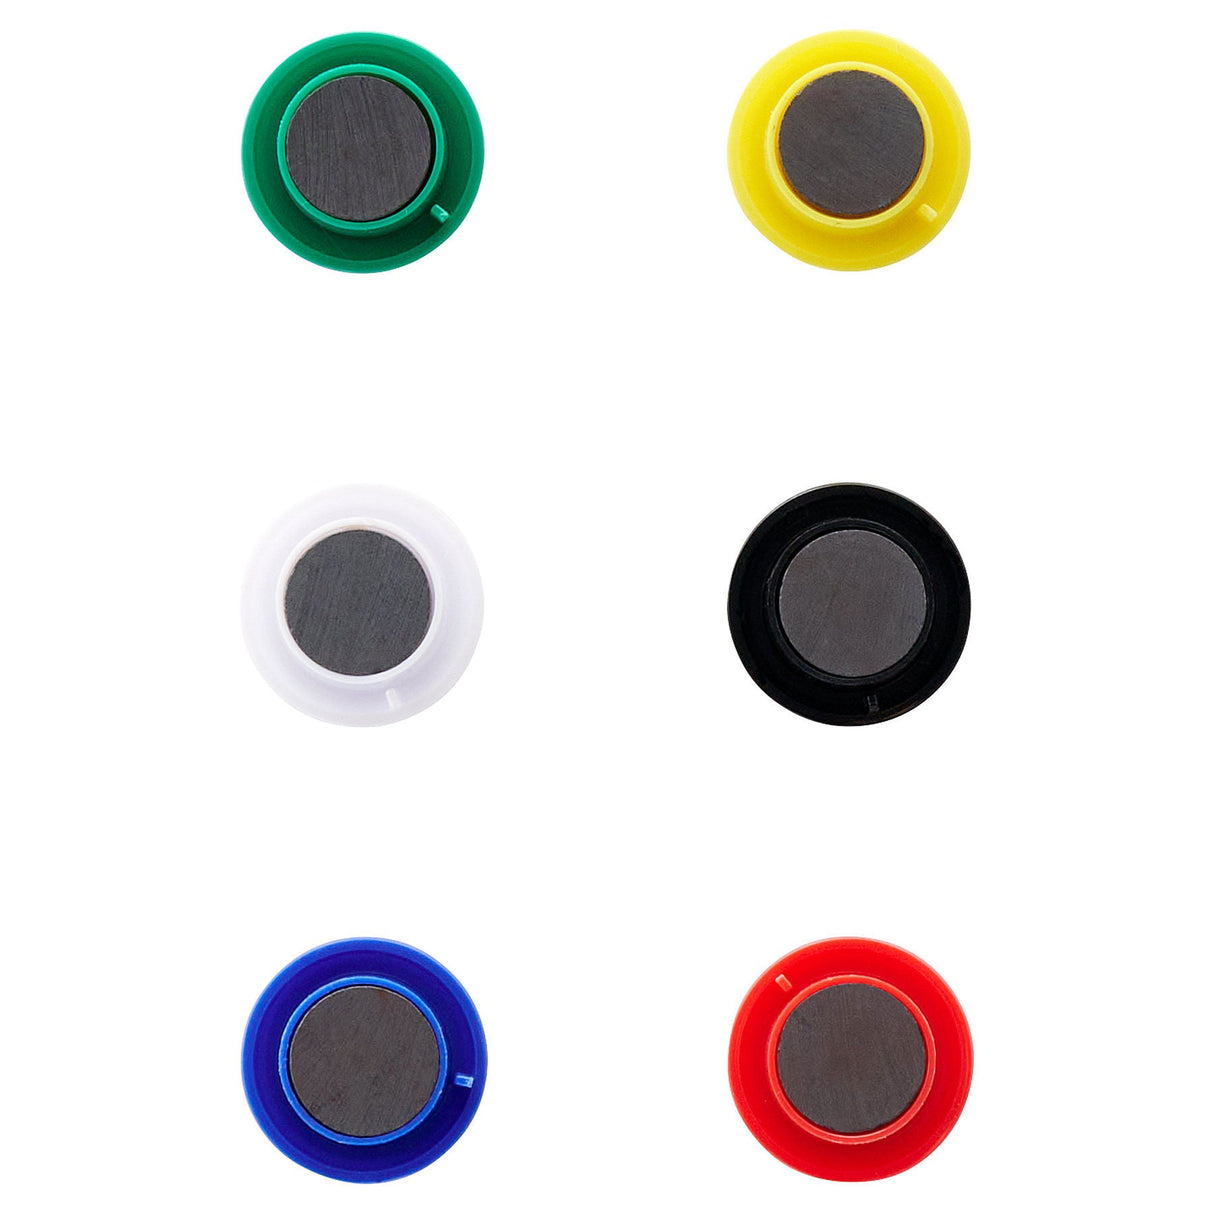 Premier Office 33mm Magnet Memo Holders - Multicoloured - Pack of 6-Magnets-Premier Office|StationeryShop.co.uk